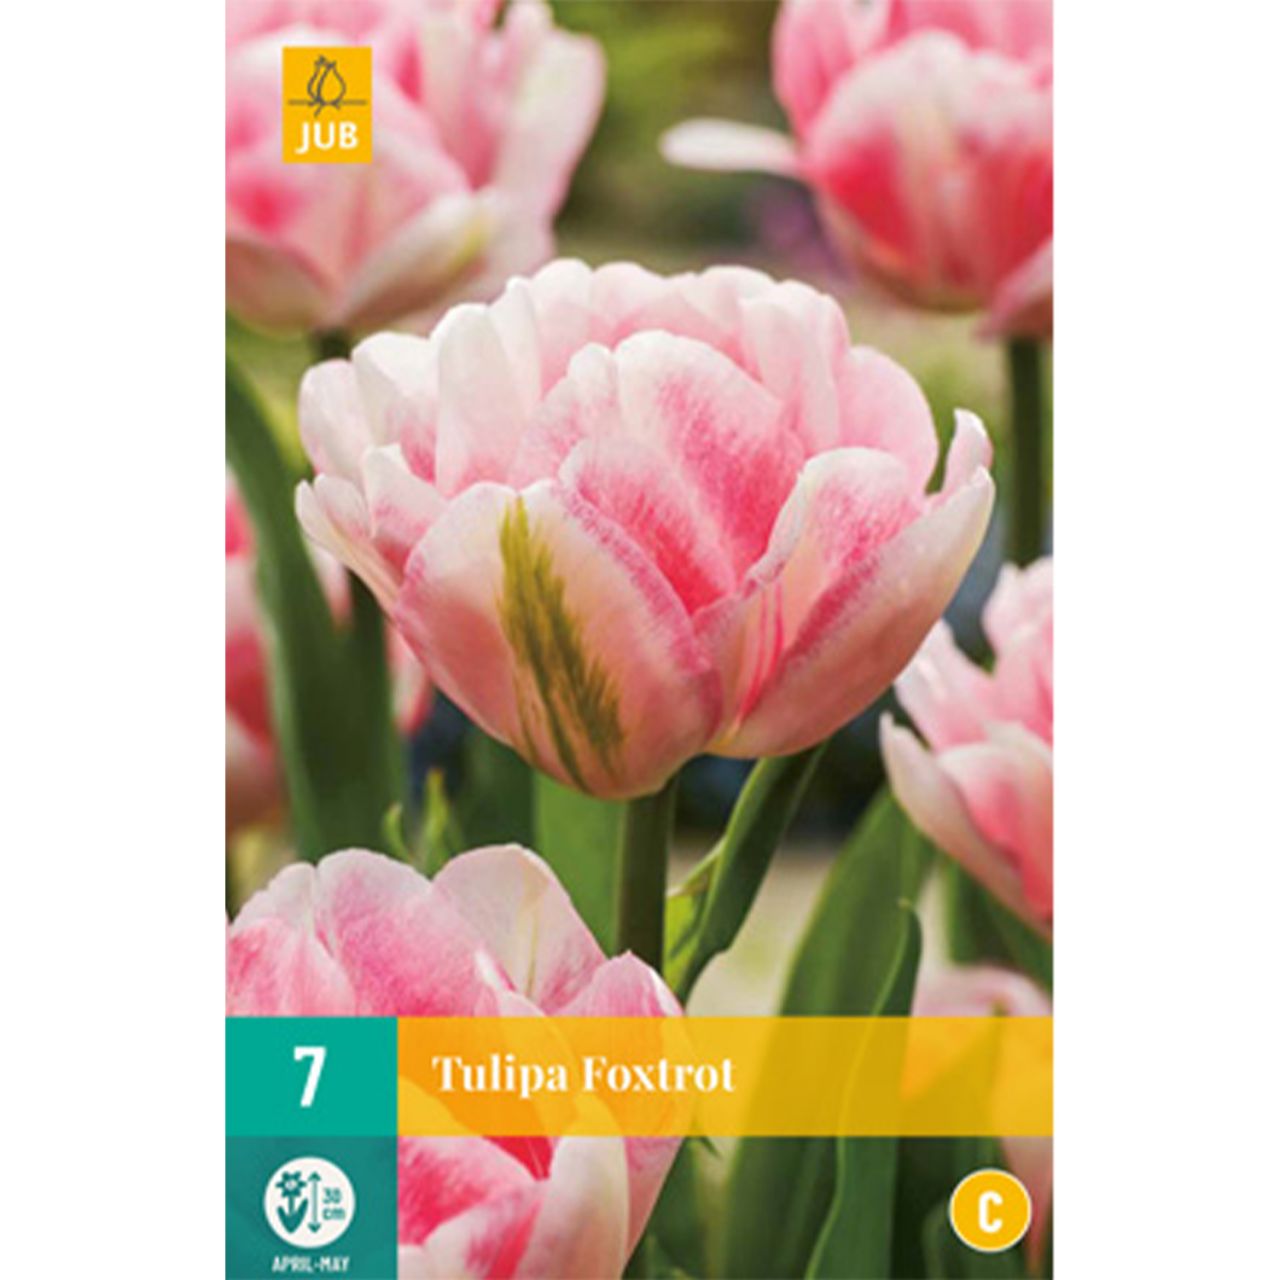 Kategorie <b>Herbst-Blumenzwiebeln </b> - Gefüllte frühe Tulpe 'Foxtrot' - 7 Stück - Tulipa 'Foxtrot'